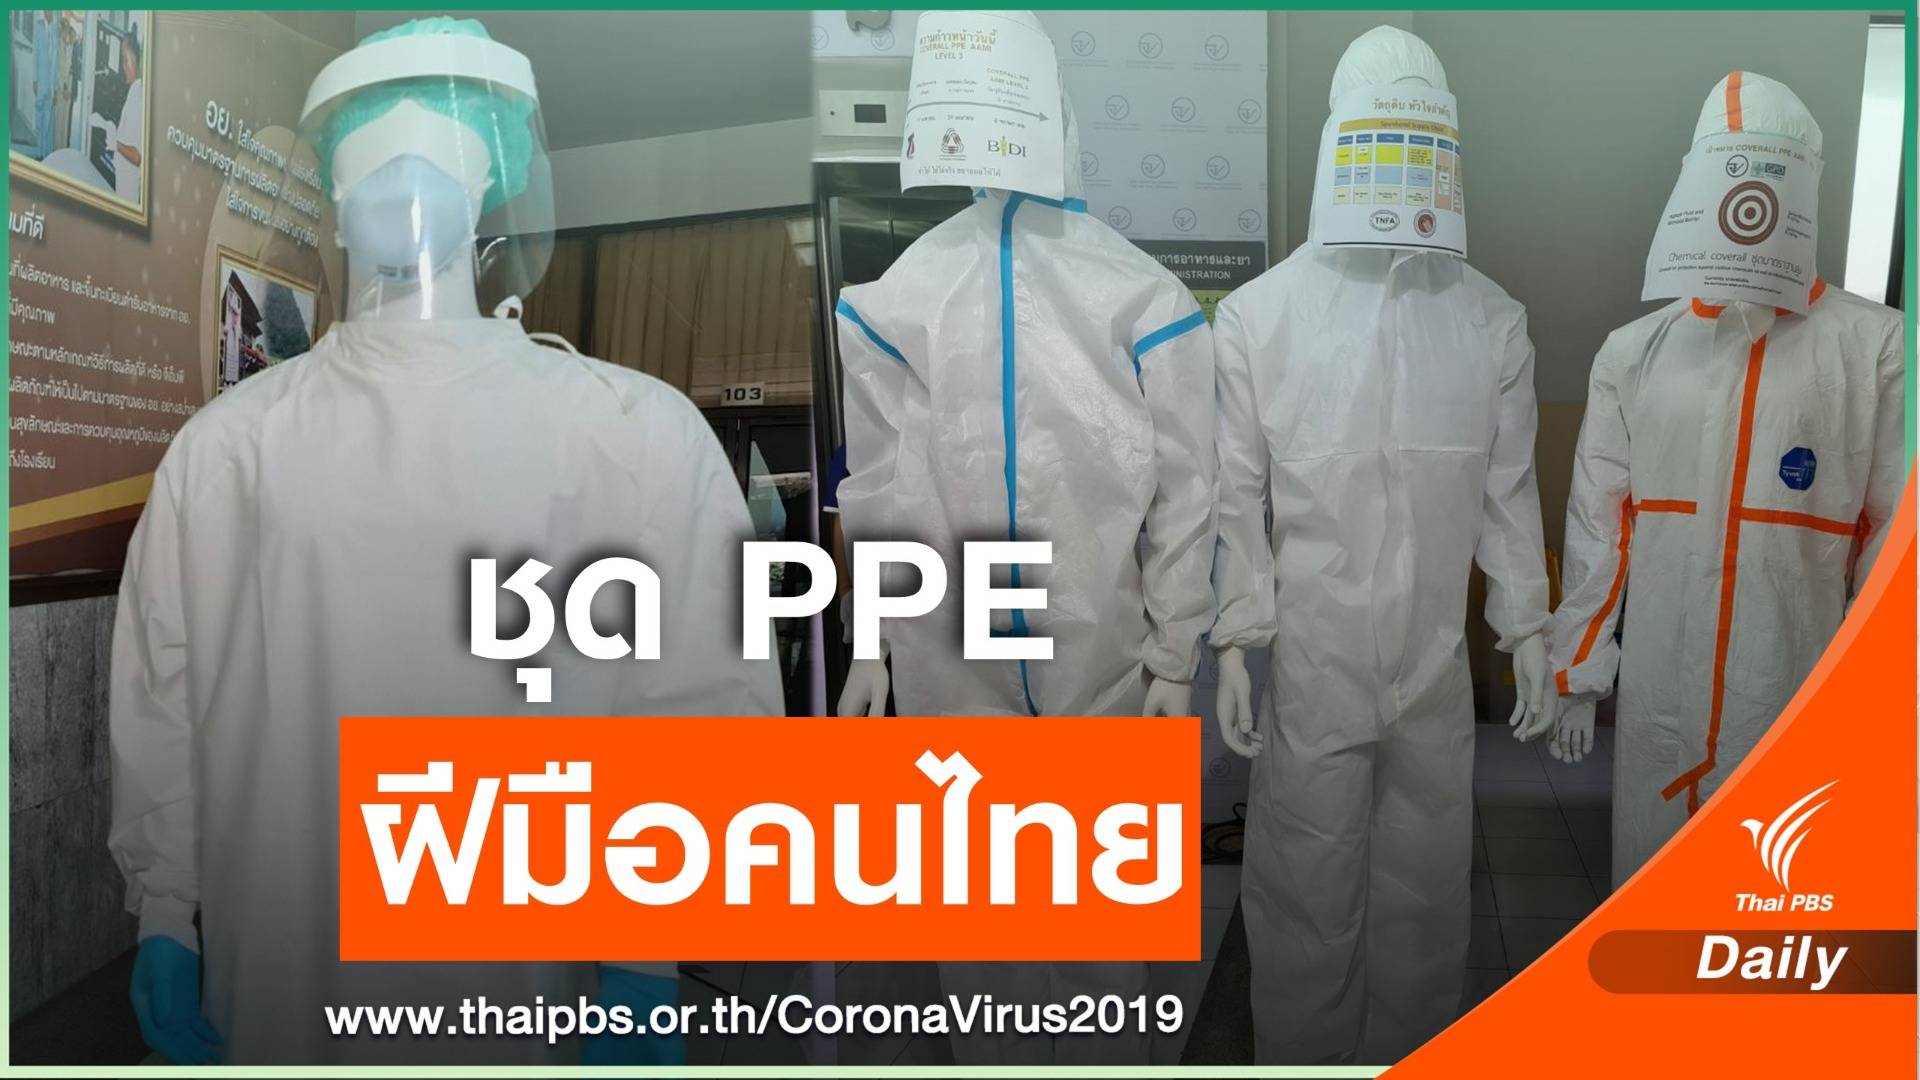 ชุด PPE ฝีมือคนไทย ให้บุคลากรทางการแพทย์ สู้ COVID-19